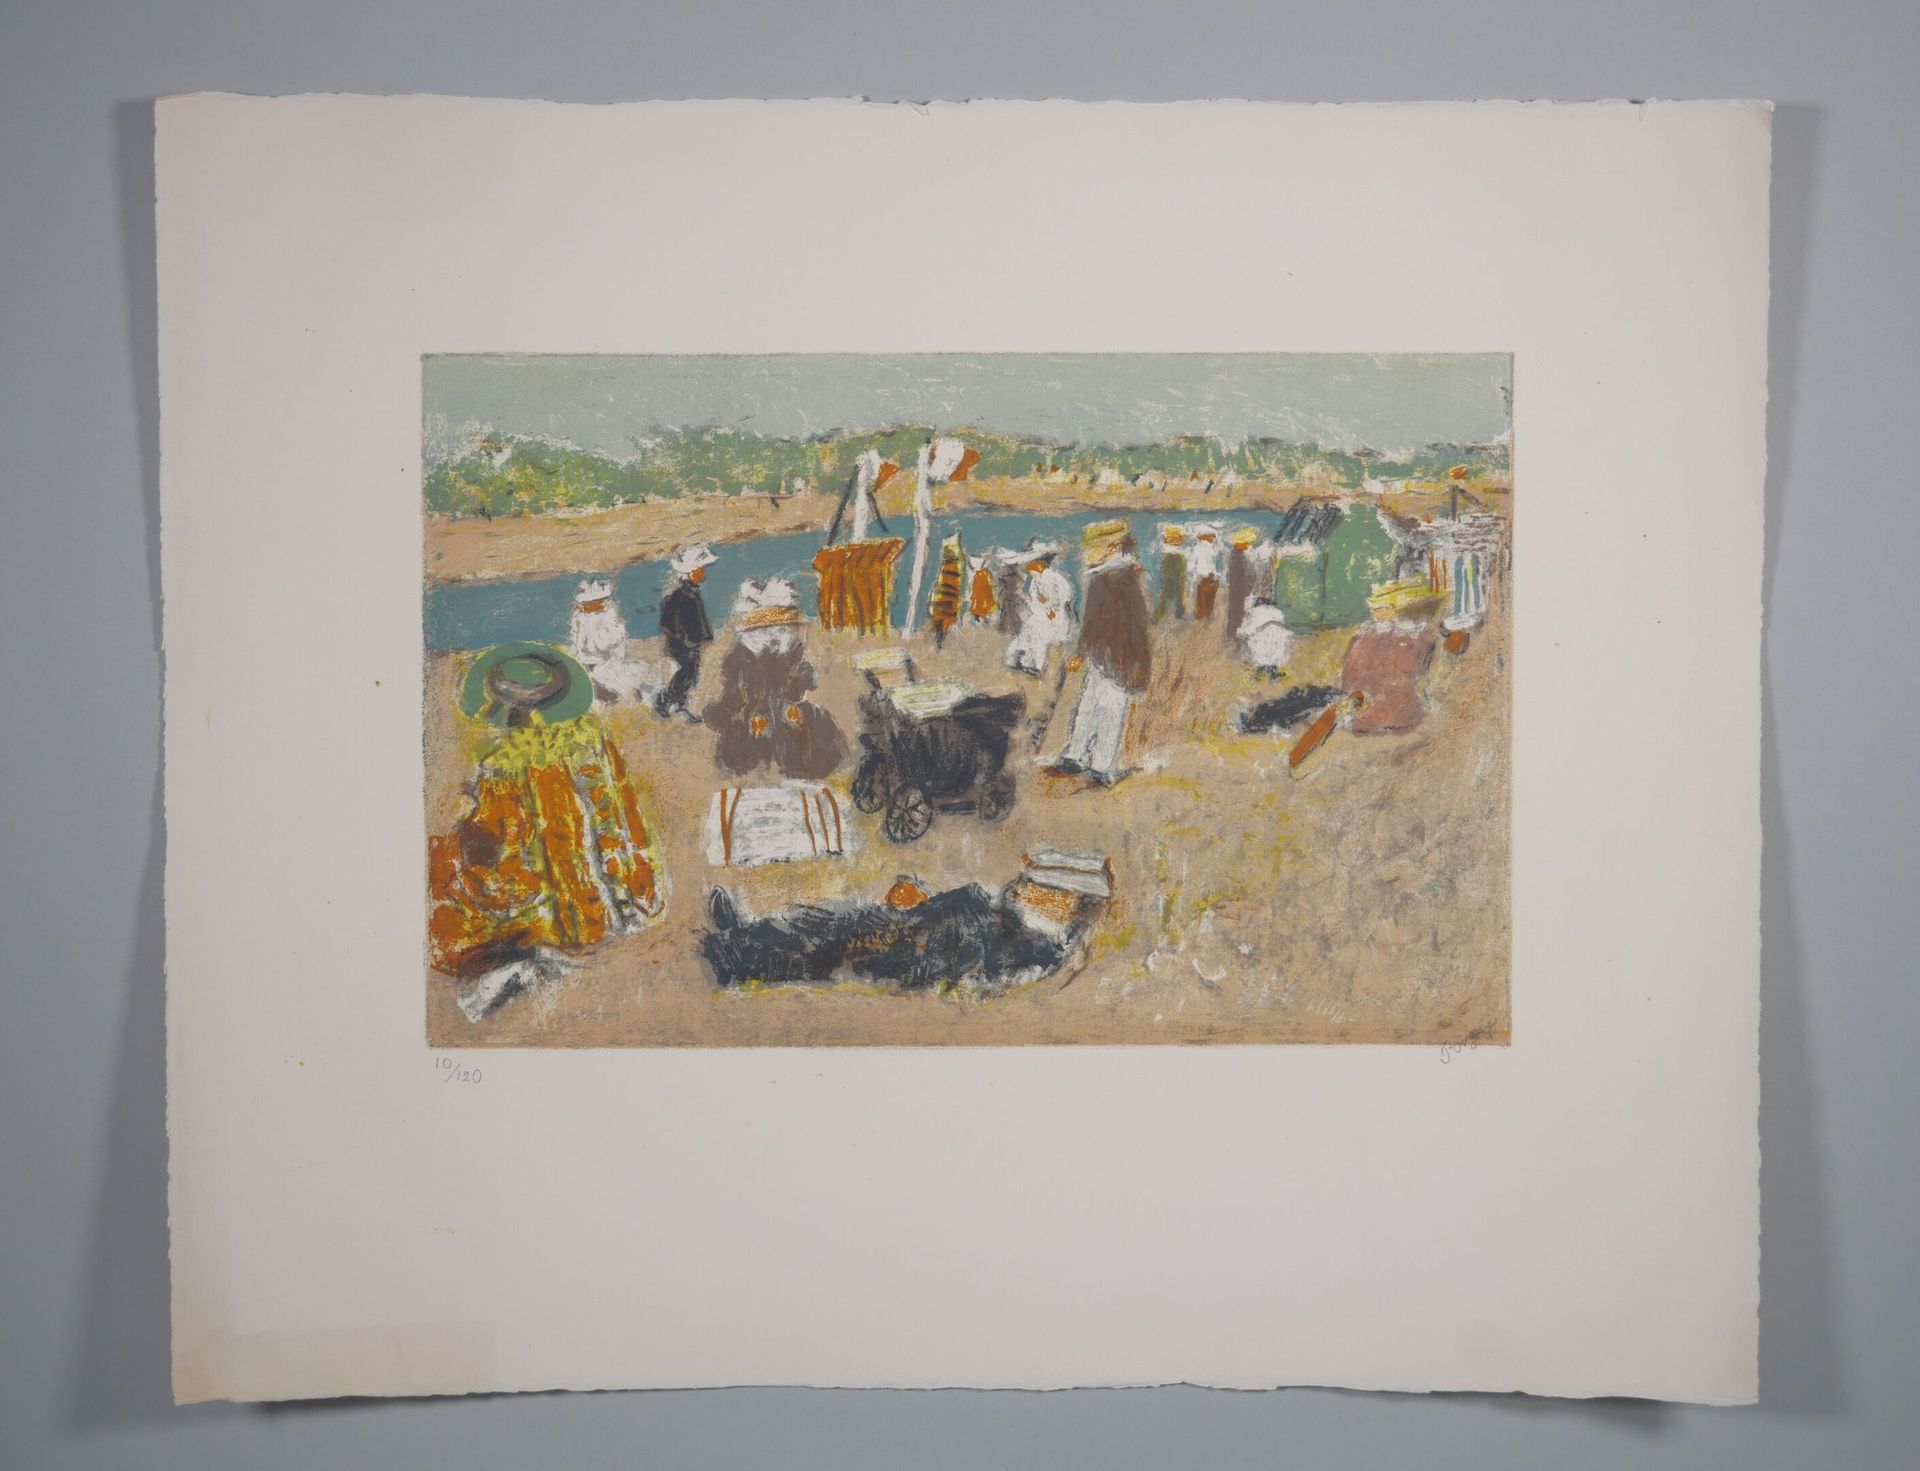 Null 让-普尼 (1892-1956)
海边 
右下角有签名的彩色雕刻，左下角有10/120字样。
纸张尺寸：45 x 57厘米 
(边缘有折痕，未装裱)
&hellip;